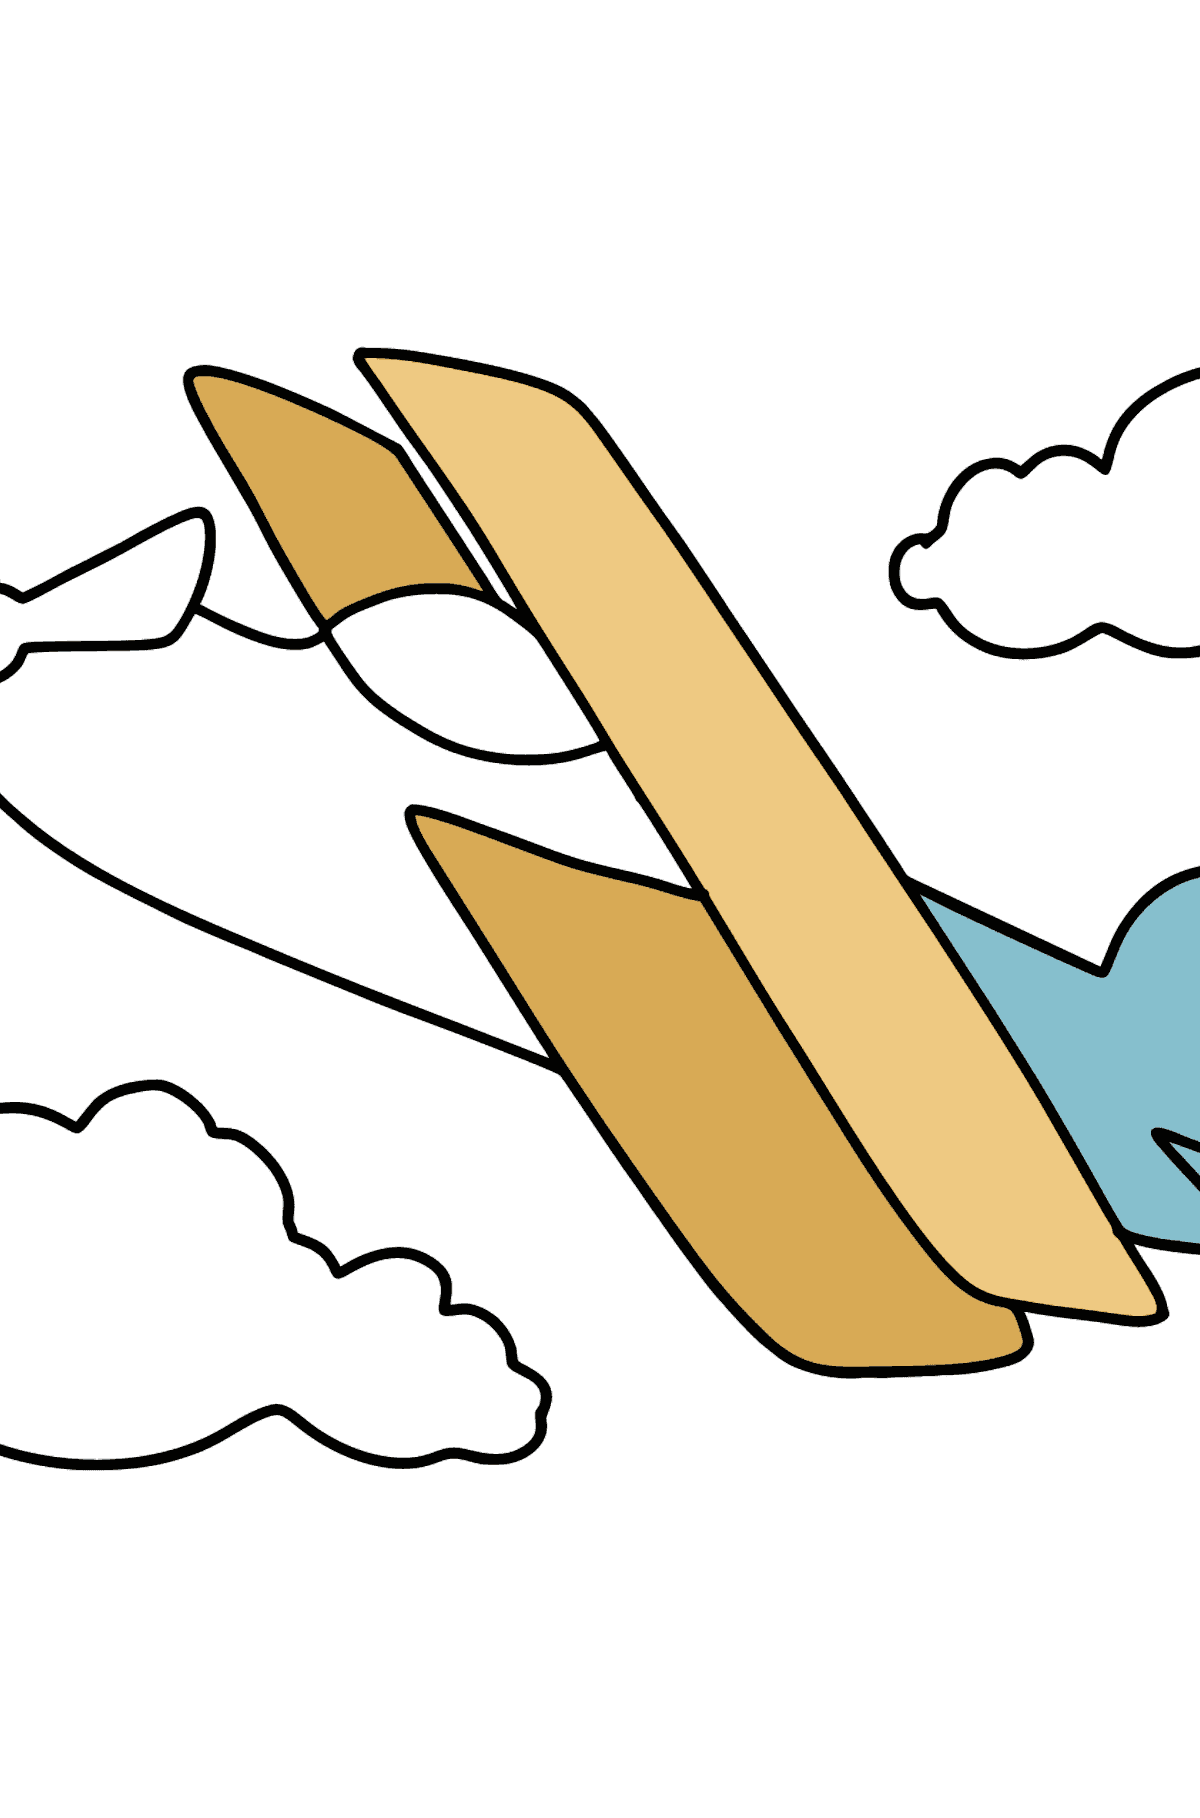 Einfache Flugzeug Ausmalbild - Malvorlagen für Kinder